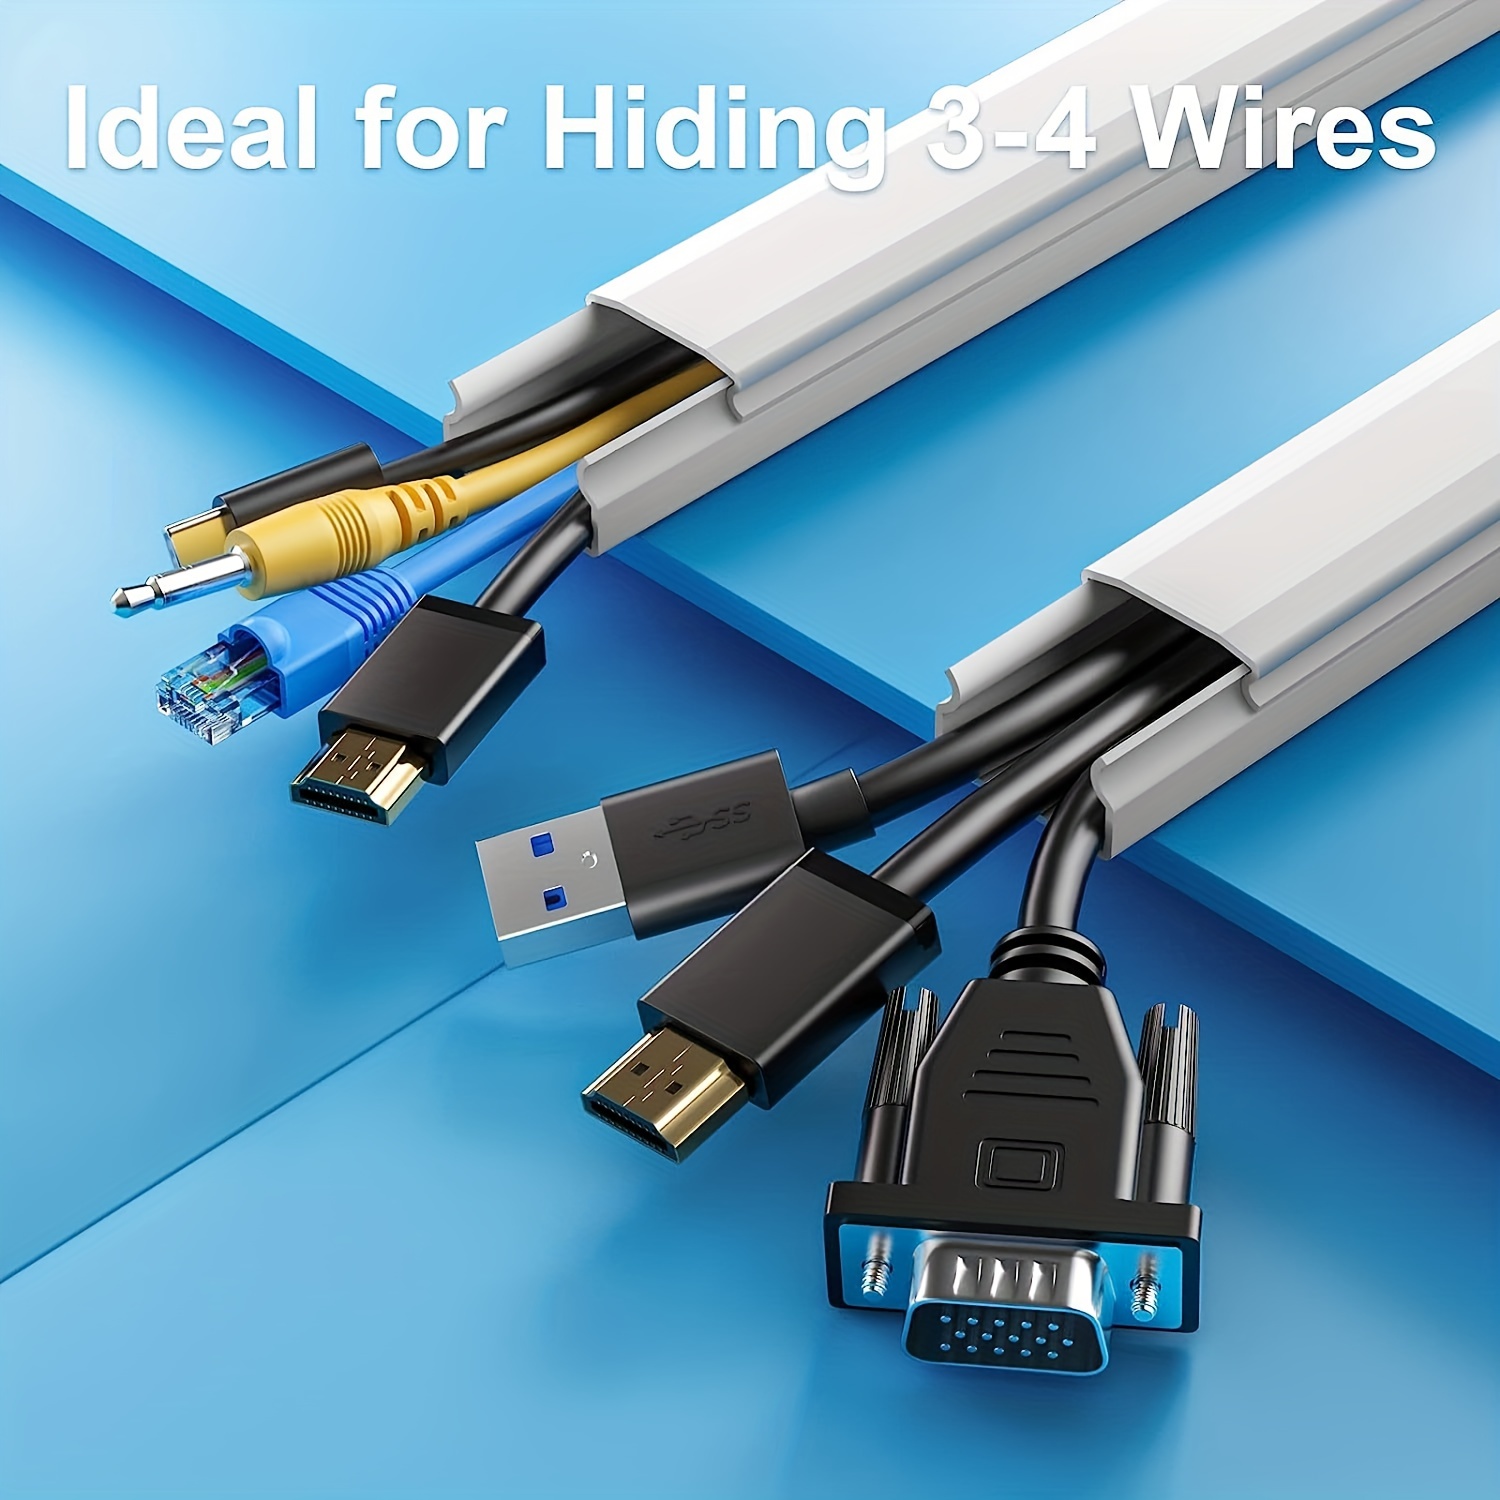  El sistema corrector de cables cubre cables, cables o cables,  kit de gestión de cubierta de cables para ocultar cables de alimentación de  TV de montaje en pared en el hogar